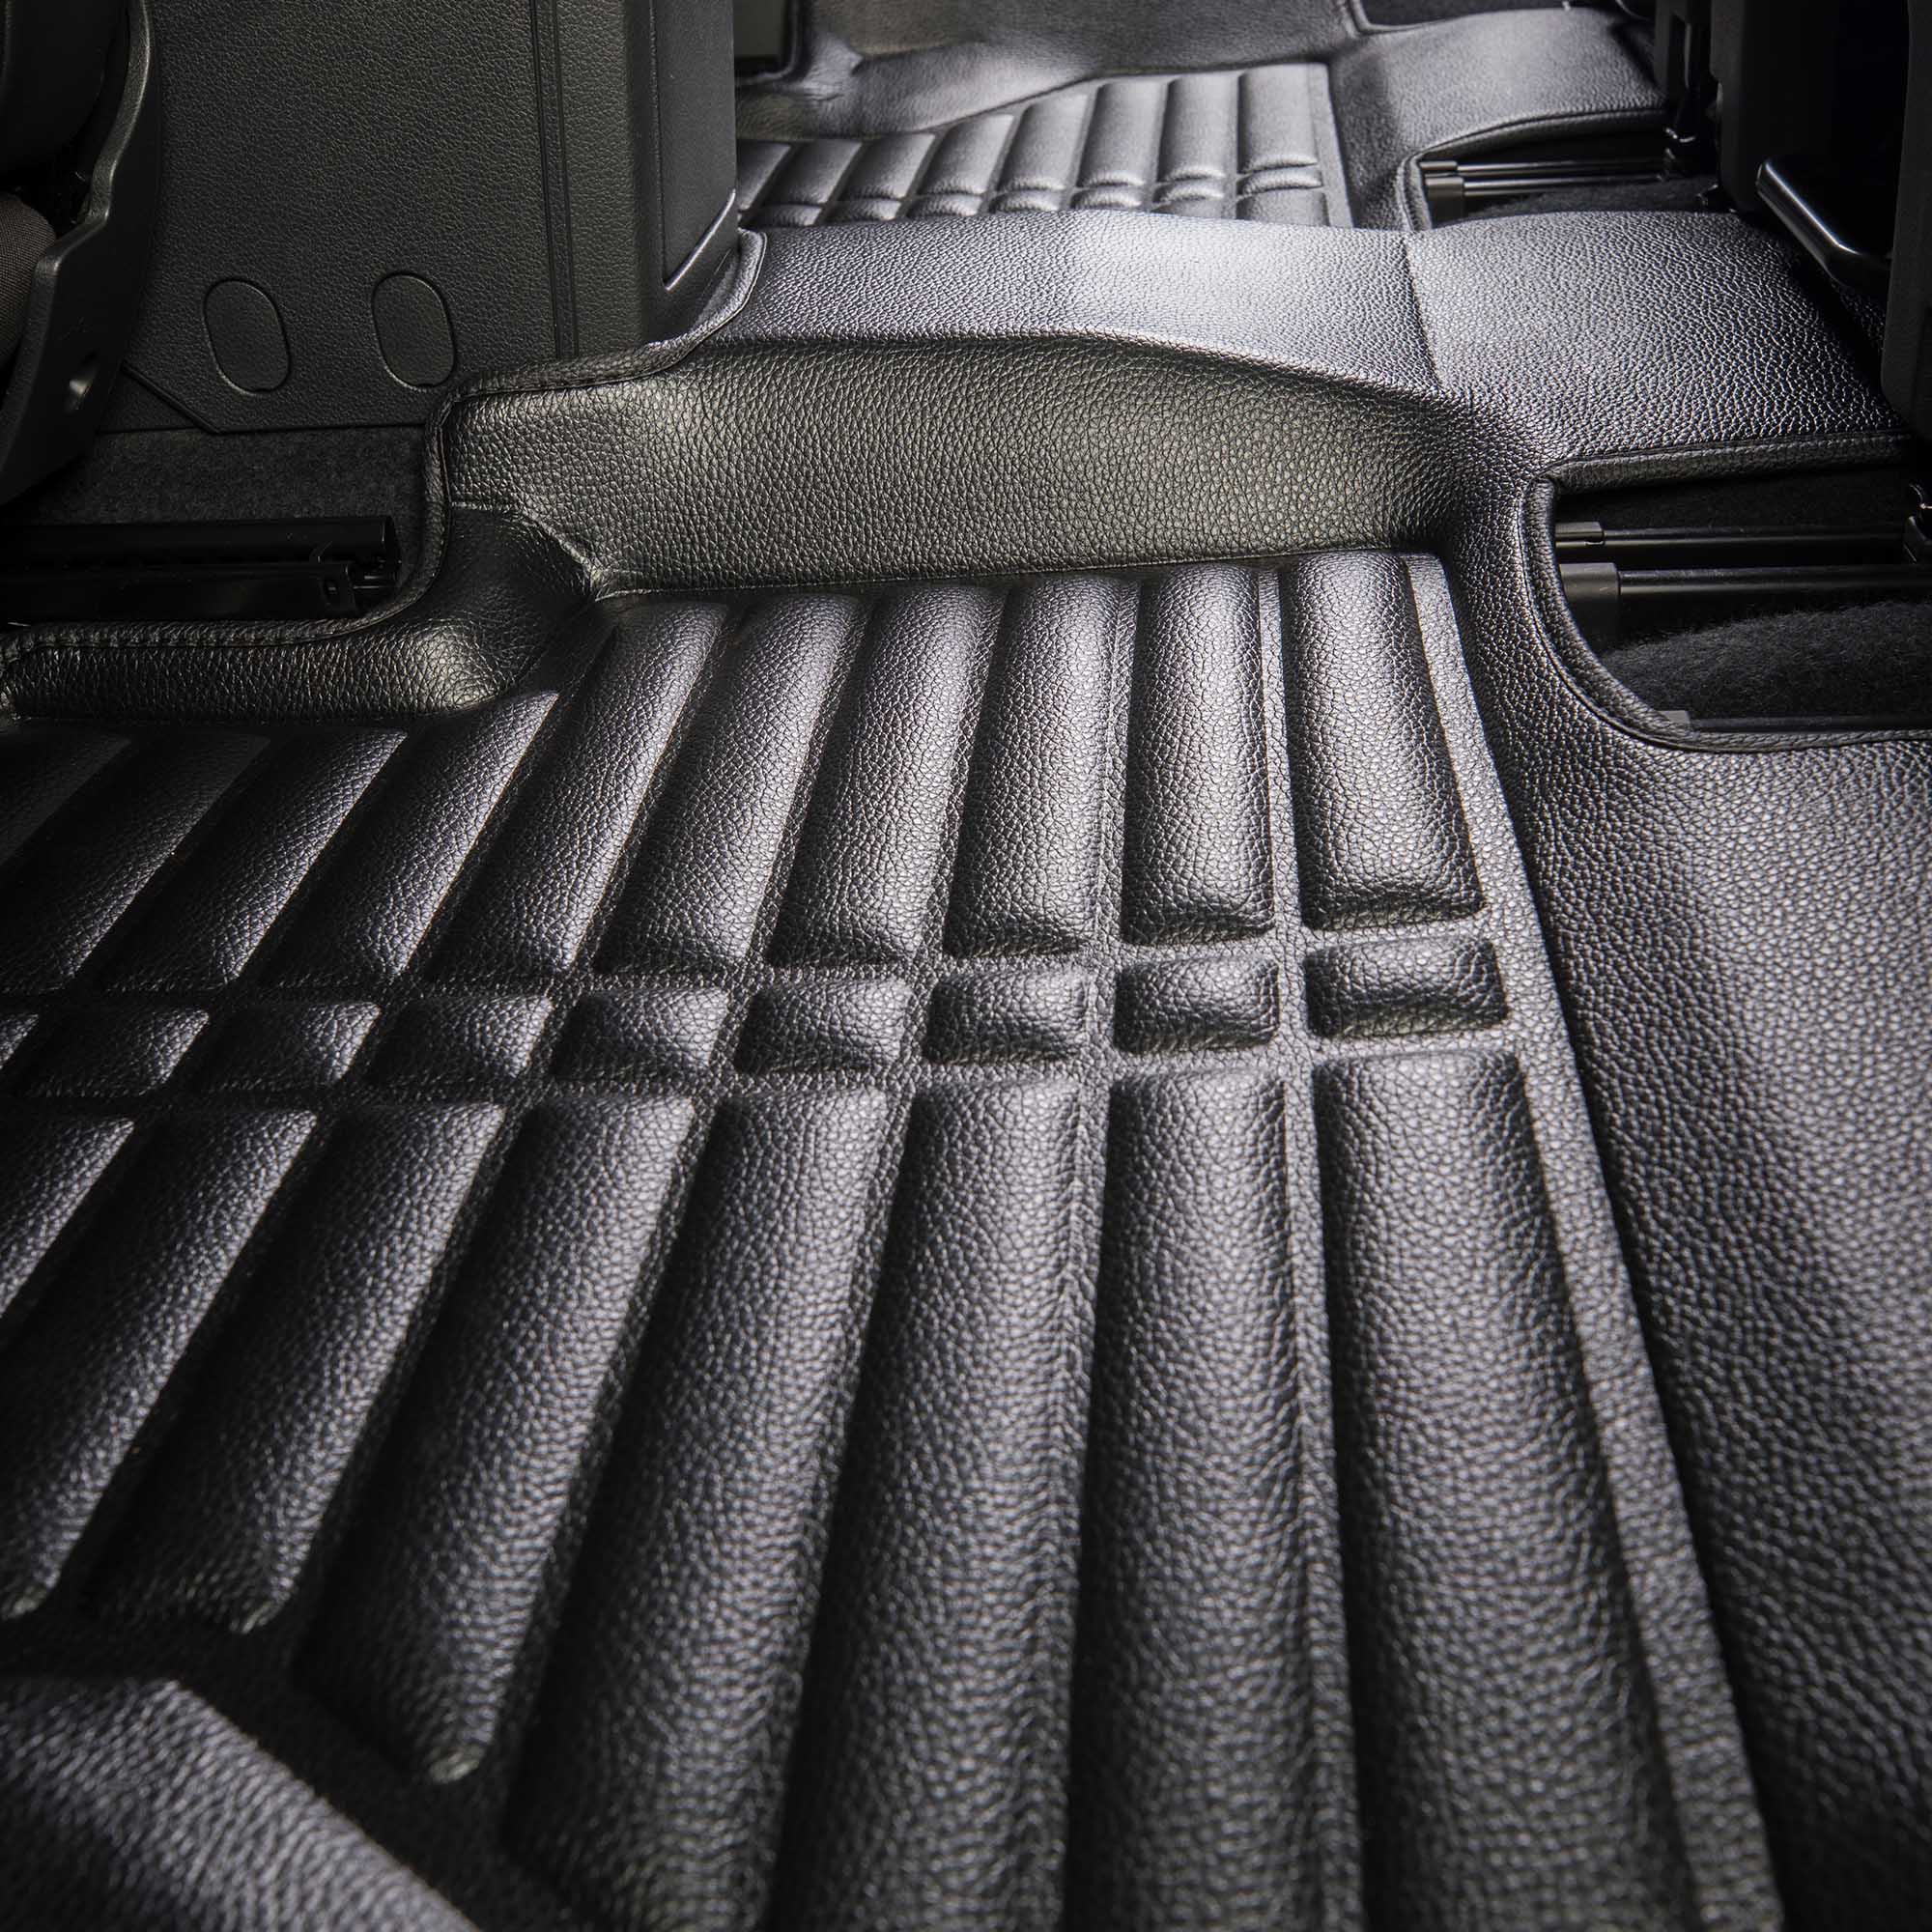 Gummi Fußmatten + Kofferraumwanne Set für VW Amarok 2010-2021 3D Passf